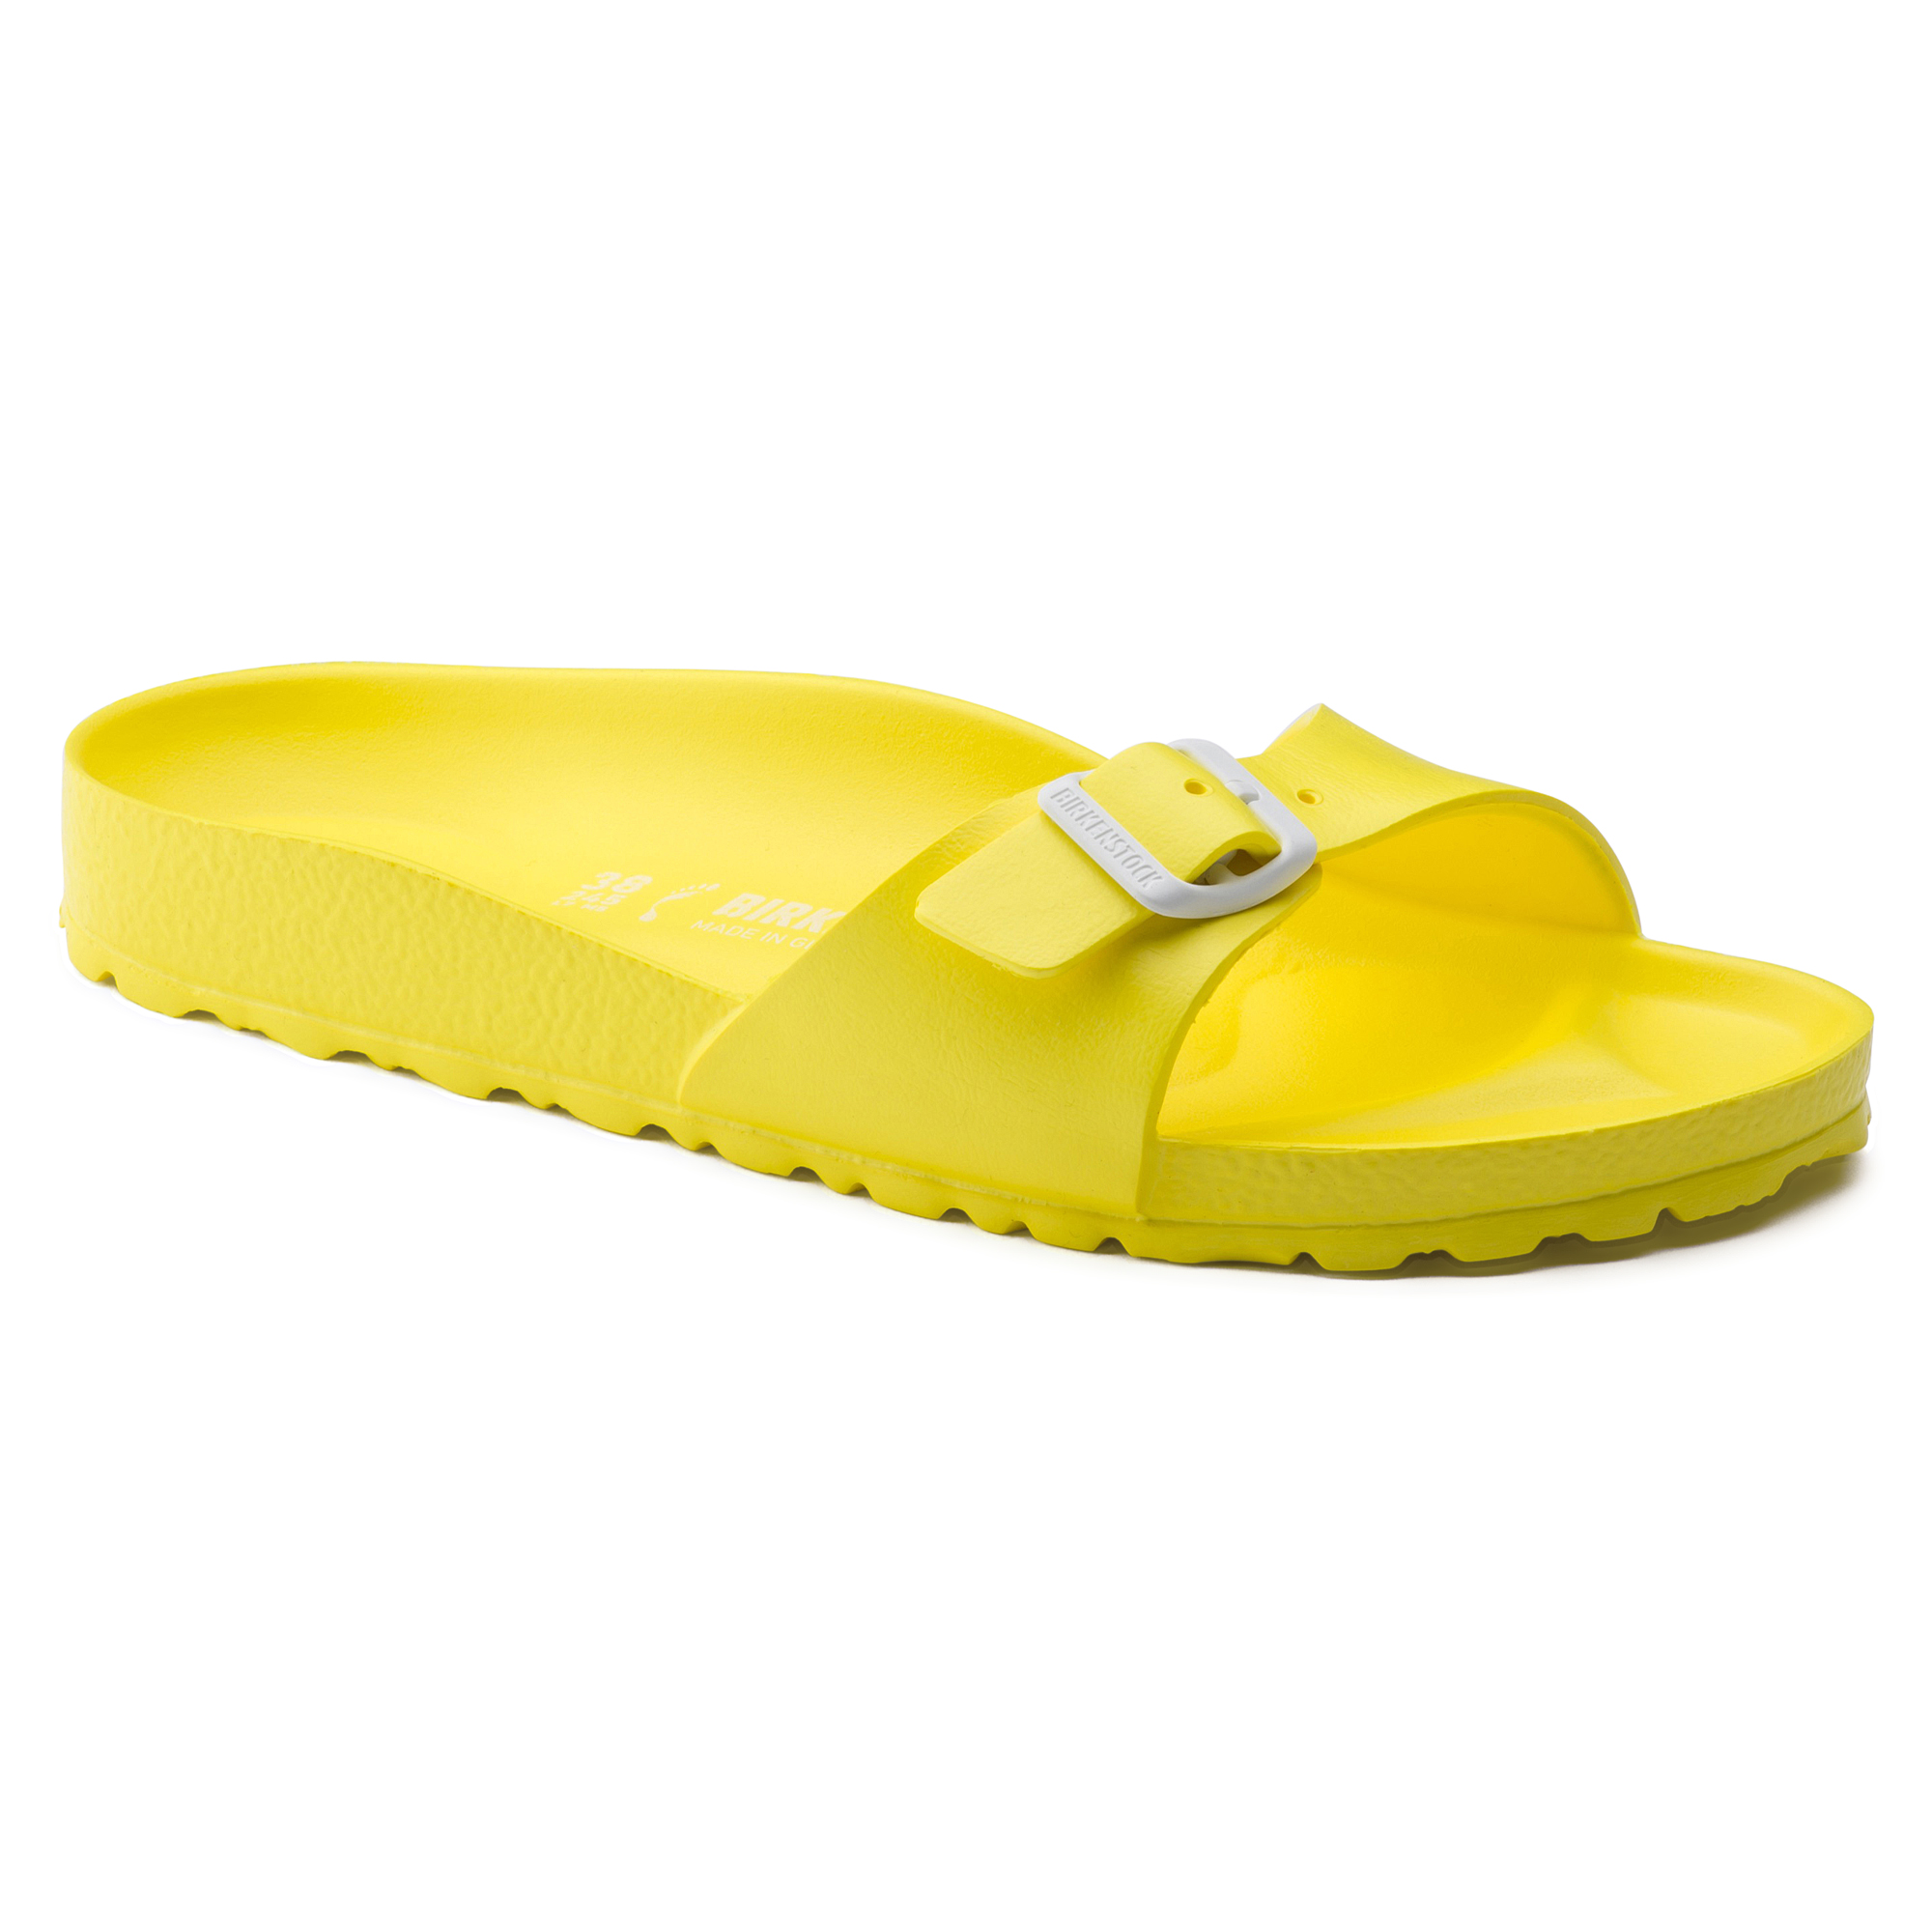 yellow birkenstock sandals